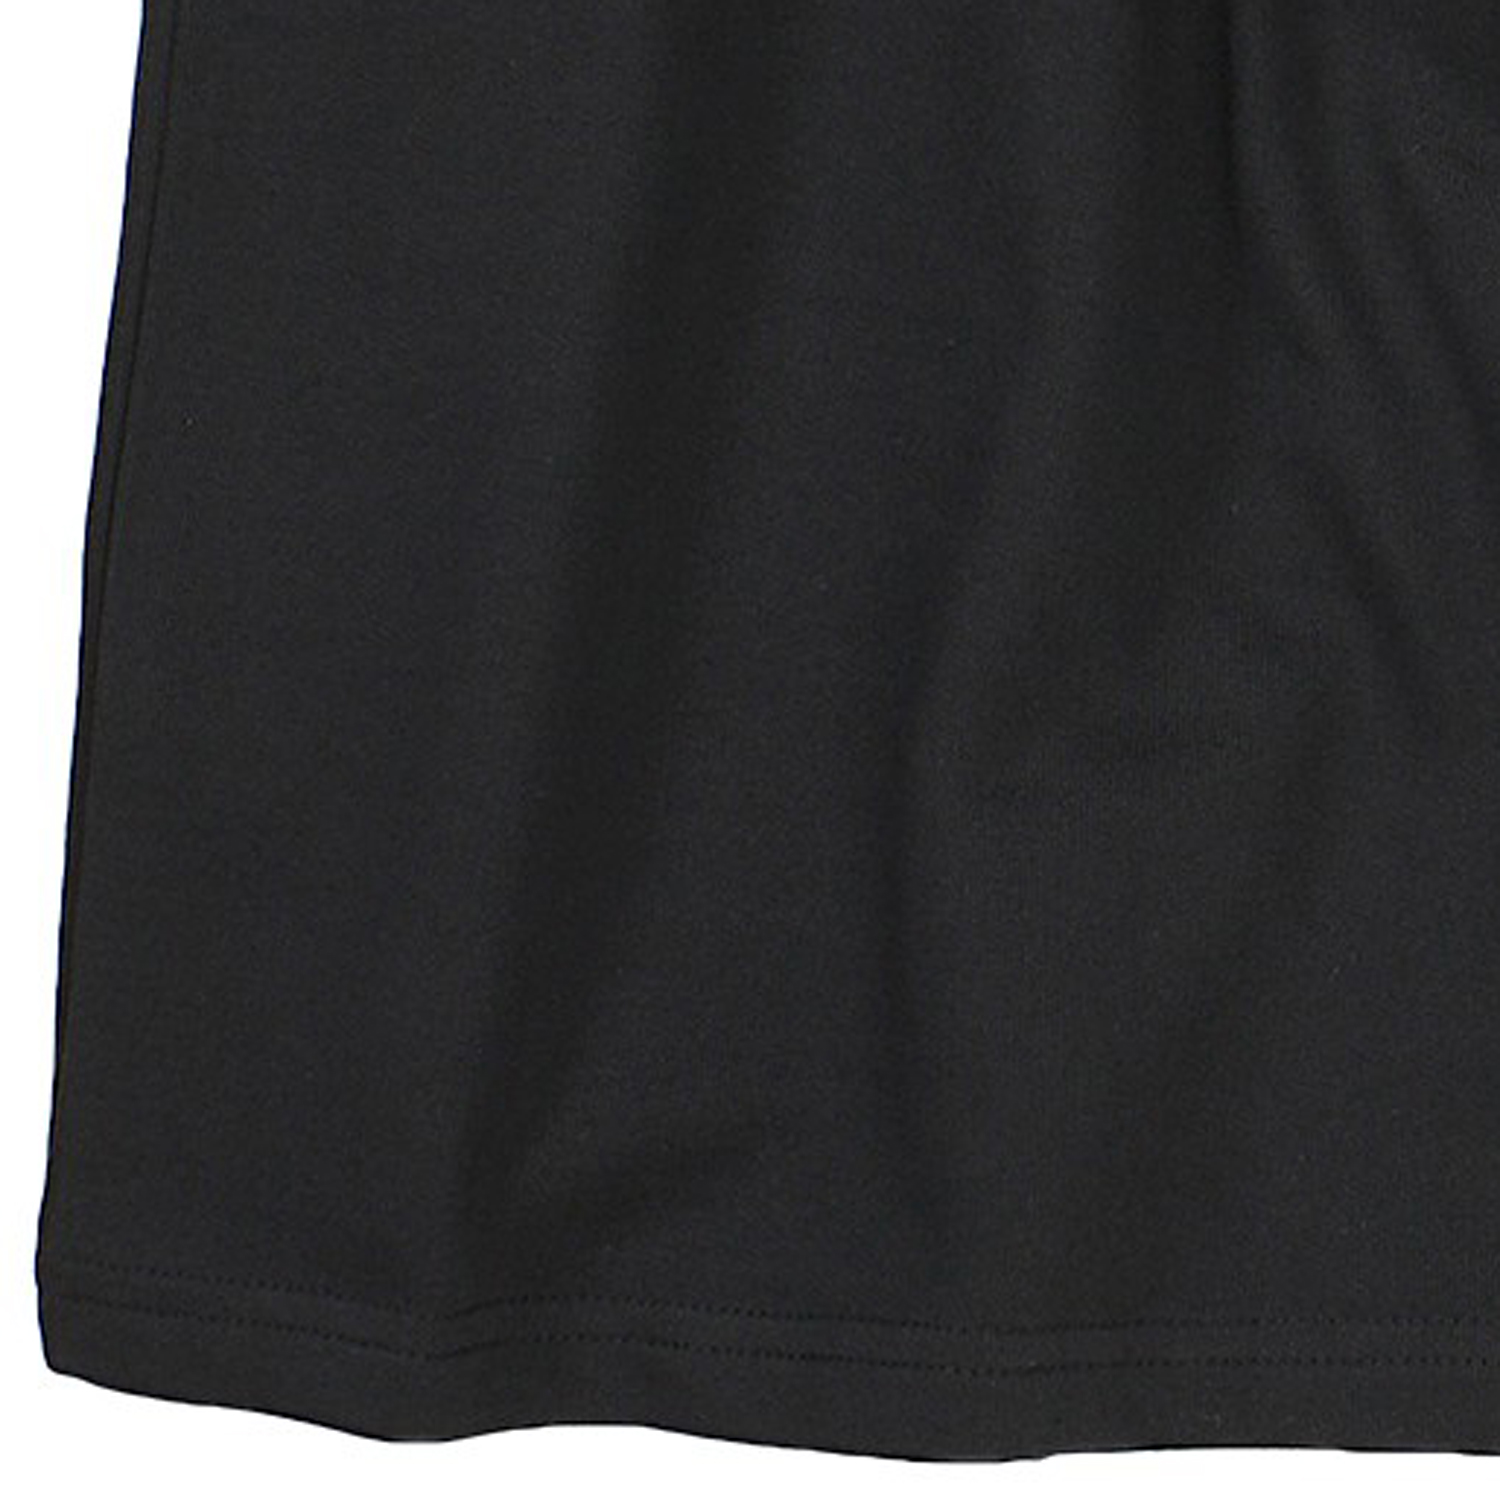 Schwarze kurze Jogginghose von Redfield für Herren in großen Größen bis 10XL